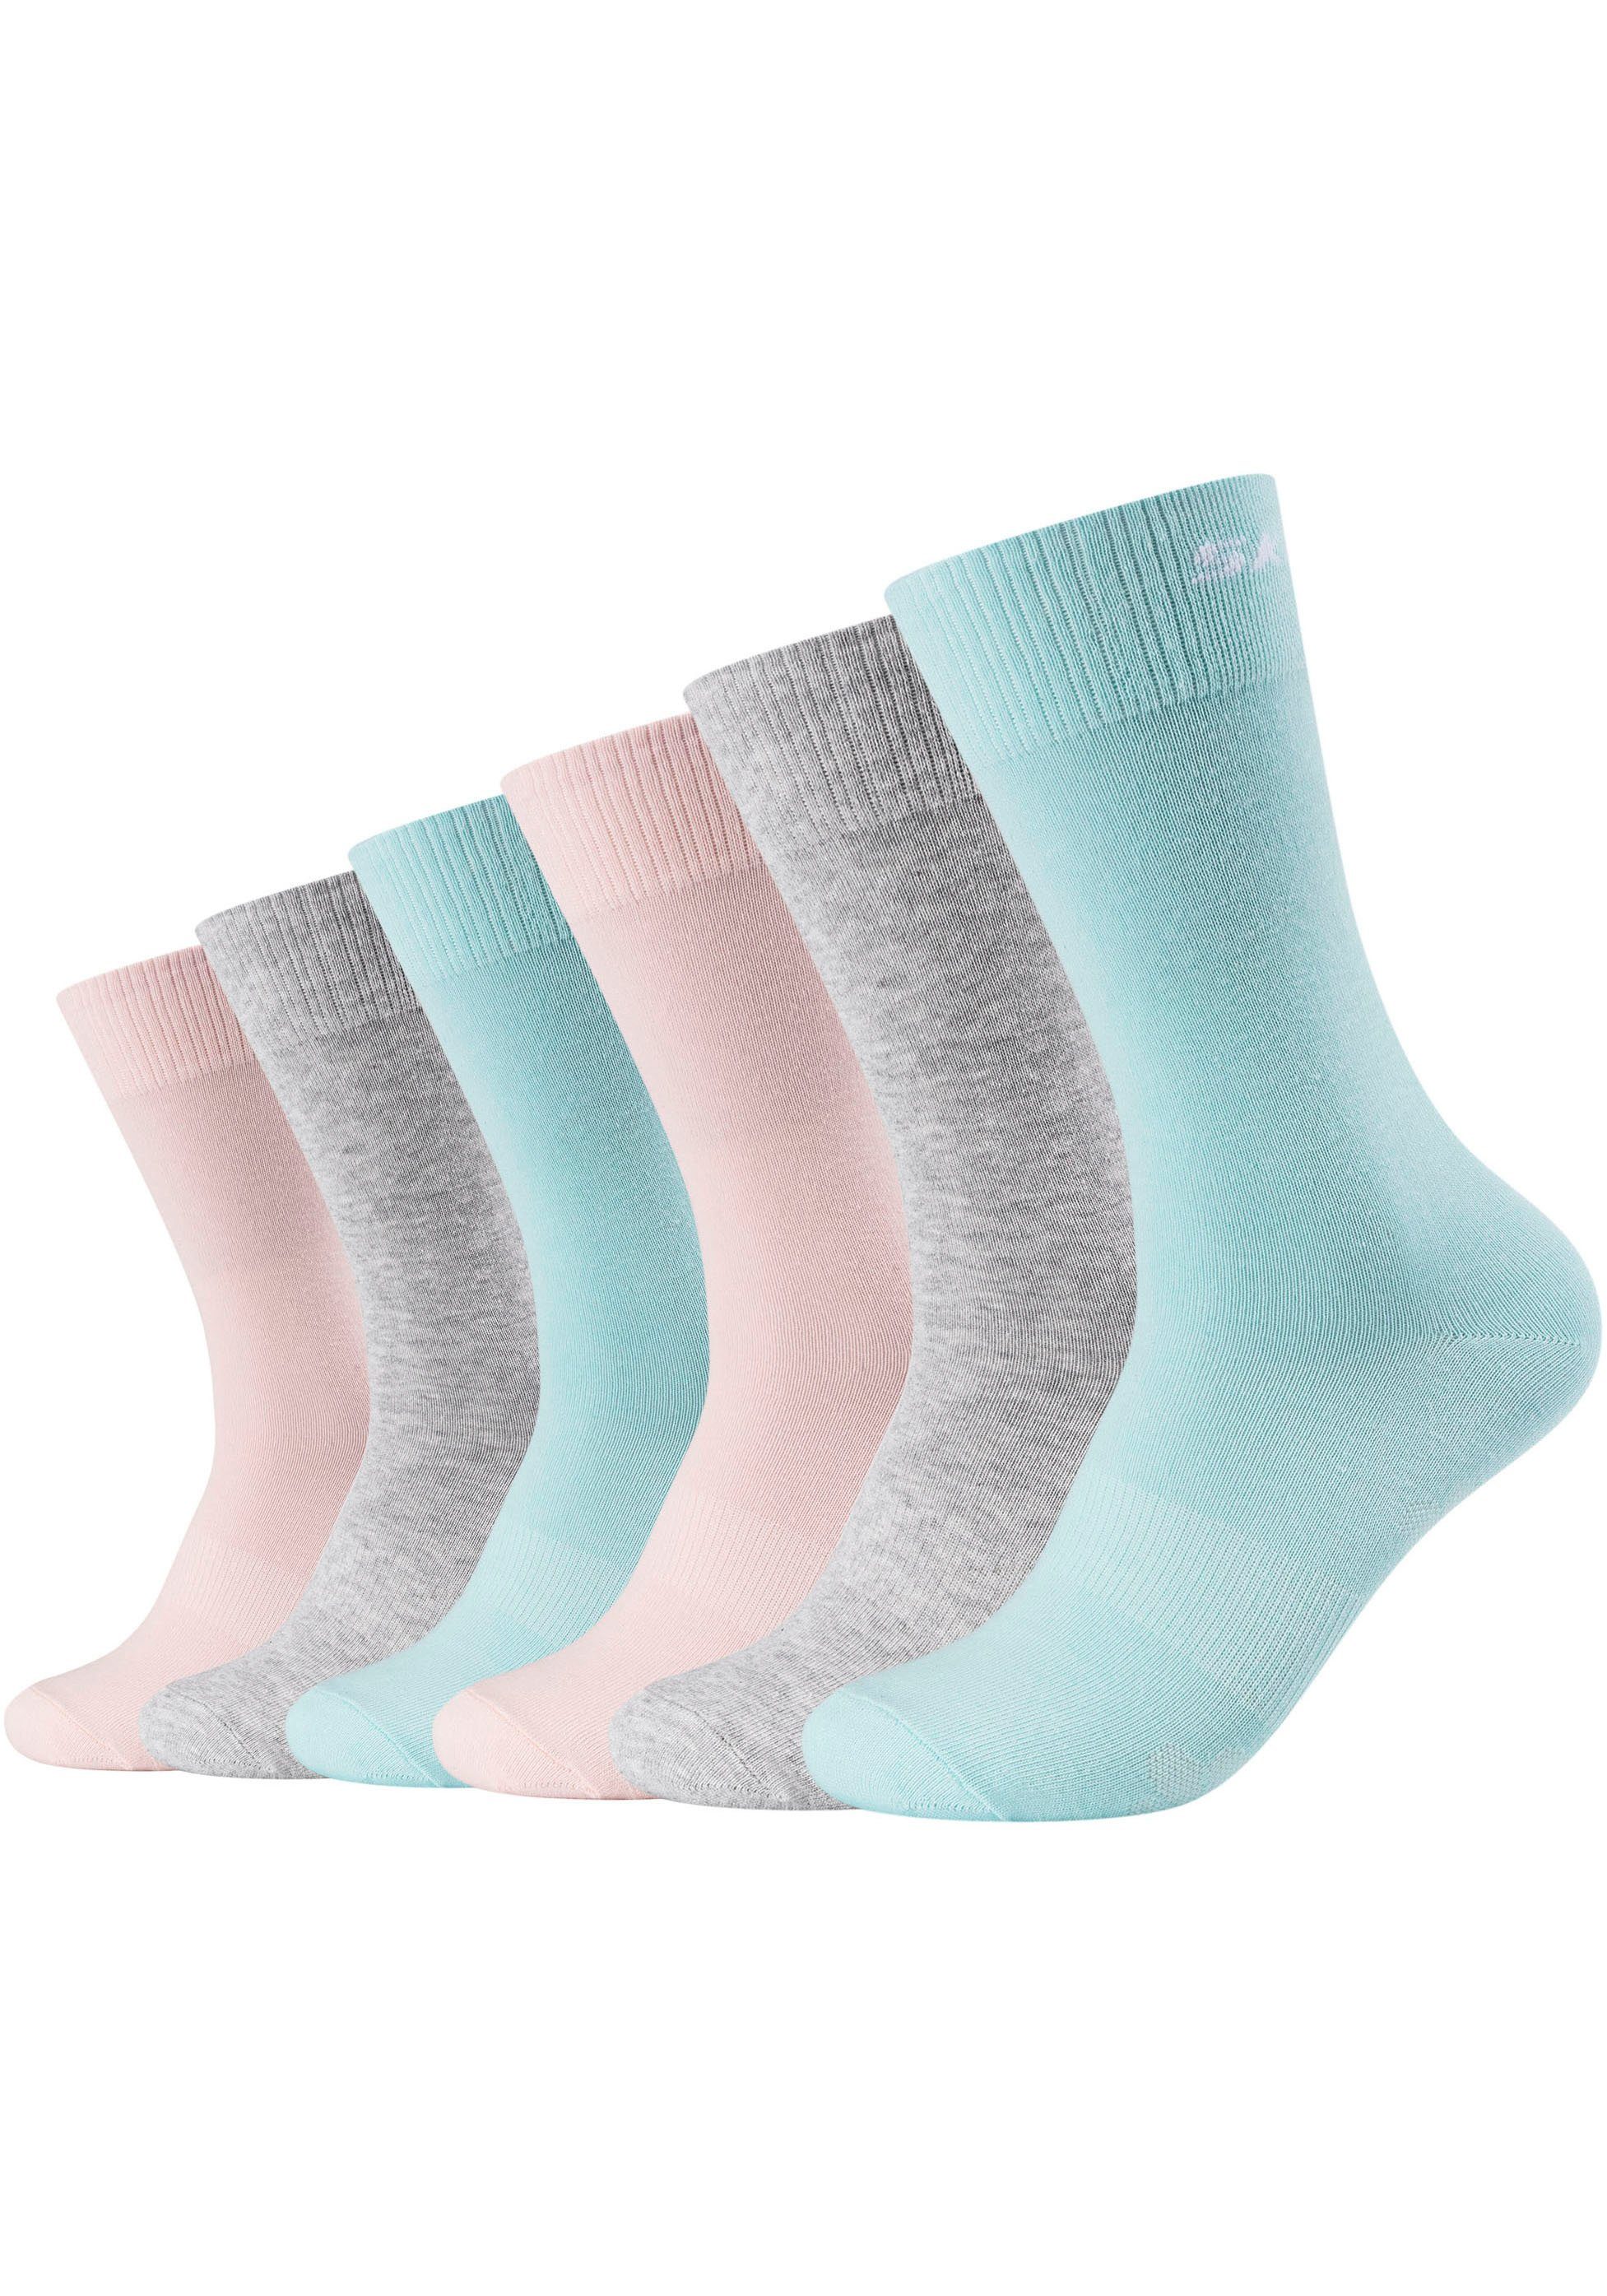 verstärkter Fersen- und Skechers Zehenbereich langlebig: Socken (Packung, 6-Paar) und Robust grau-rose-aqua